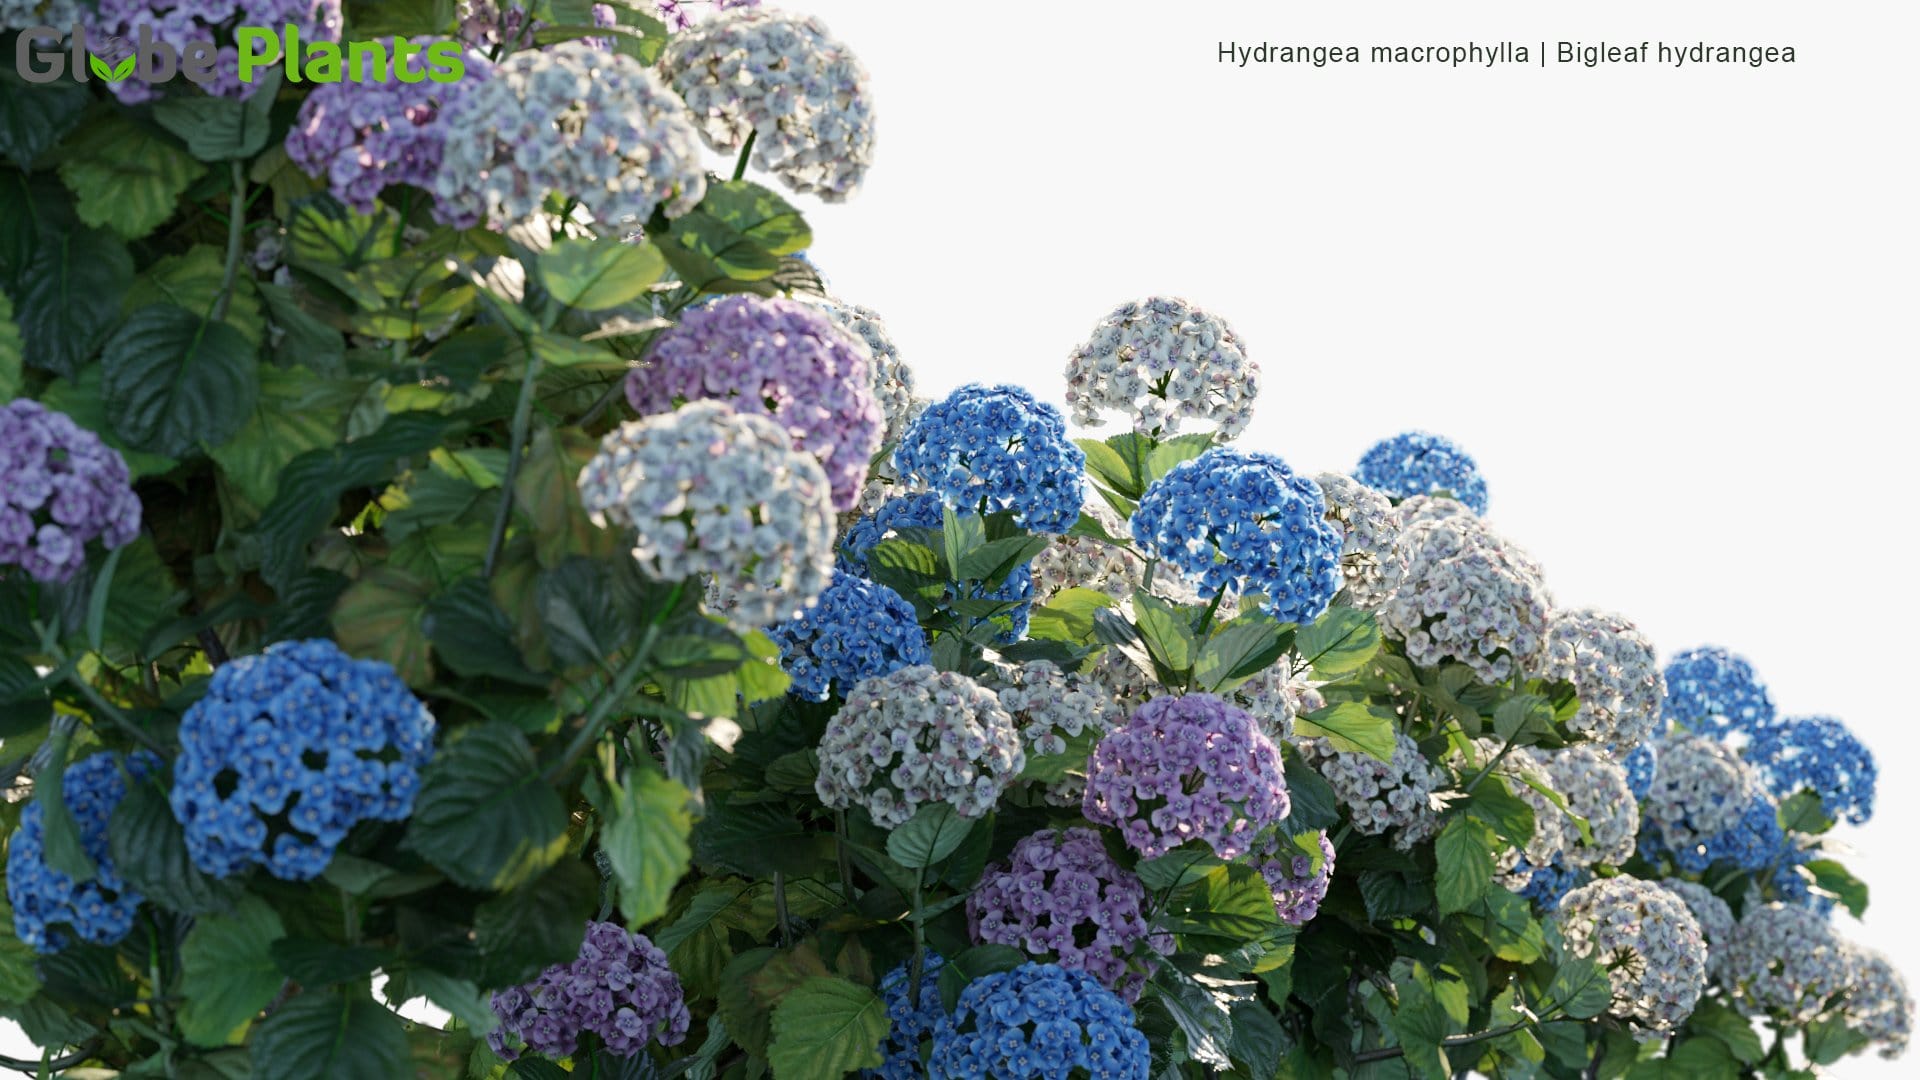 Hydrangea Macrophylla - Bigleaf Hydrangea, French Hydrangea, Lacecap Hydrangea, Mophead Hydrangea, Penny Mac, Hortensia (3D Model)